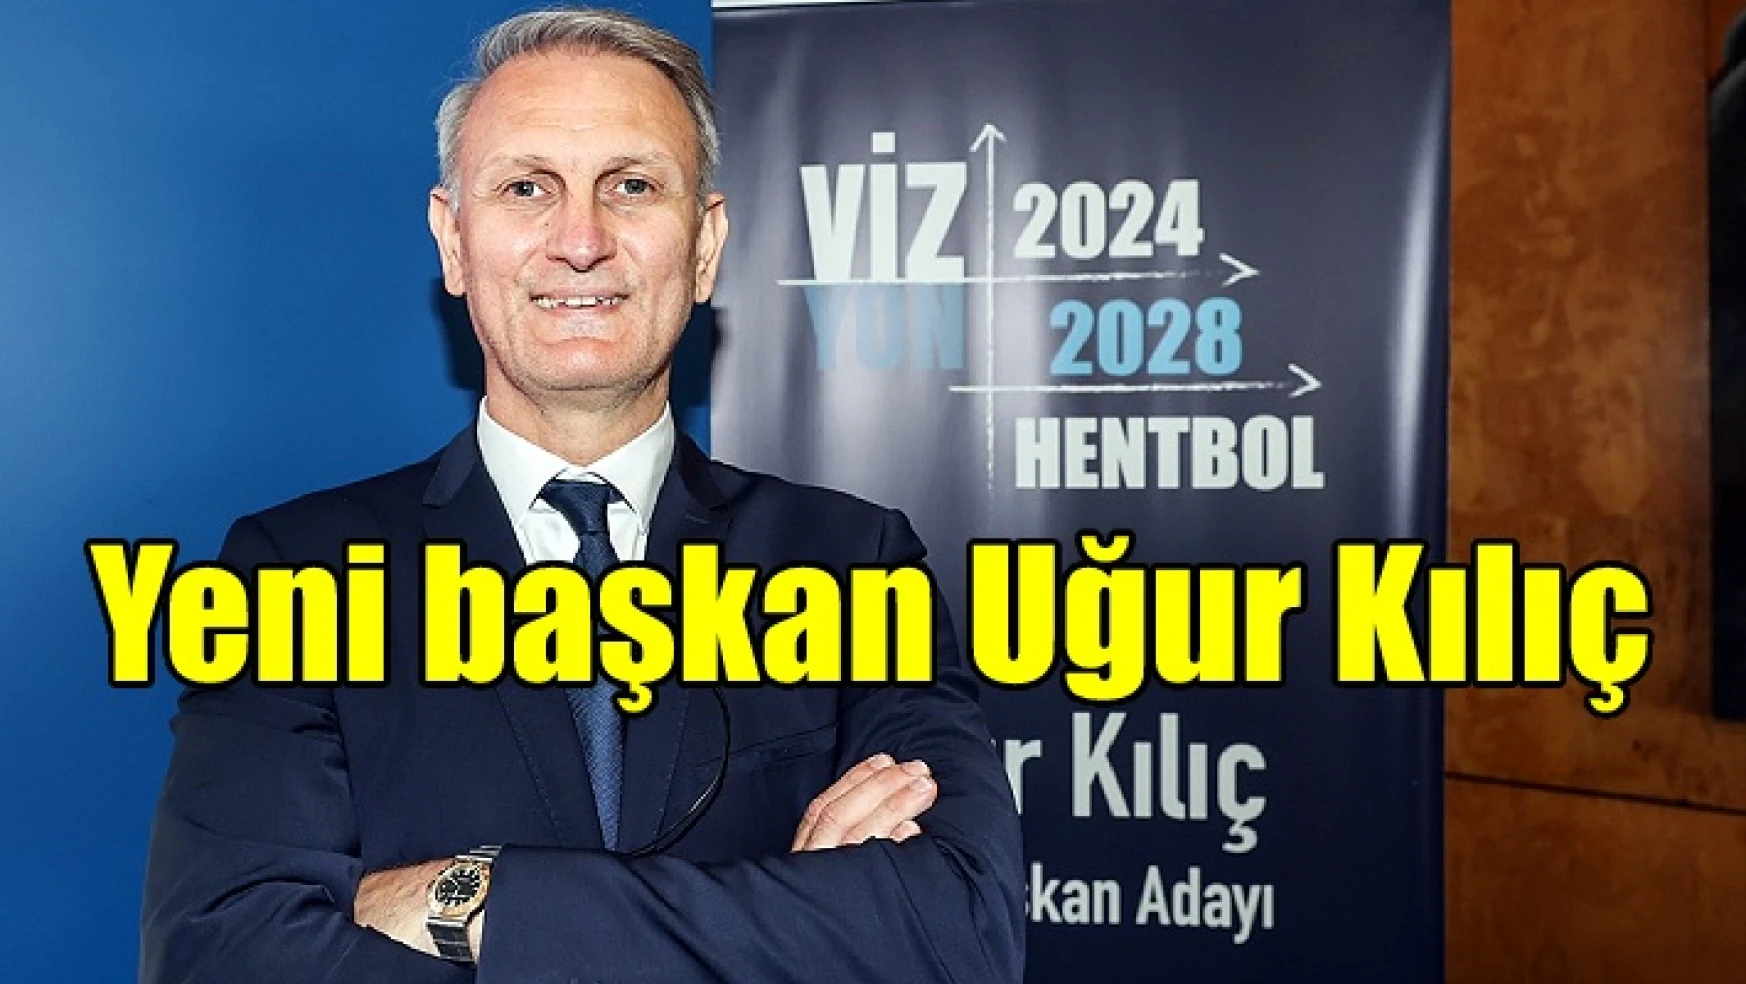 Türkiye Hentbol Federasyonu’nun yeni başkanı Uğur Kılıç